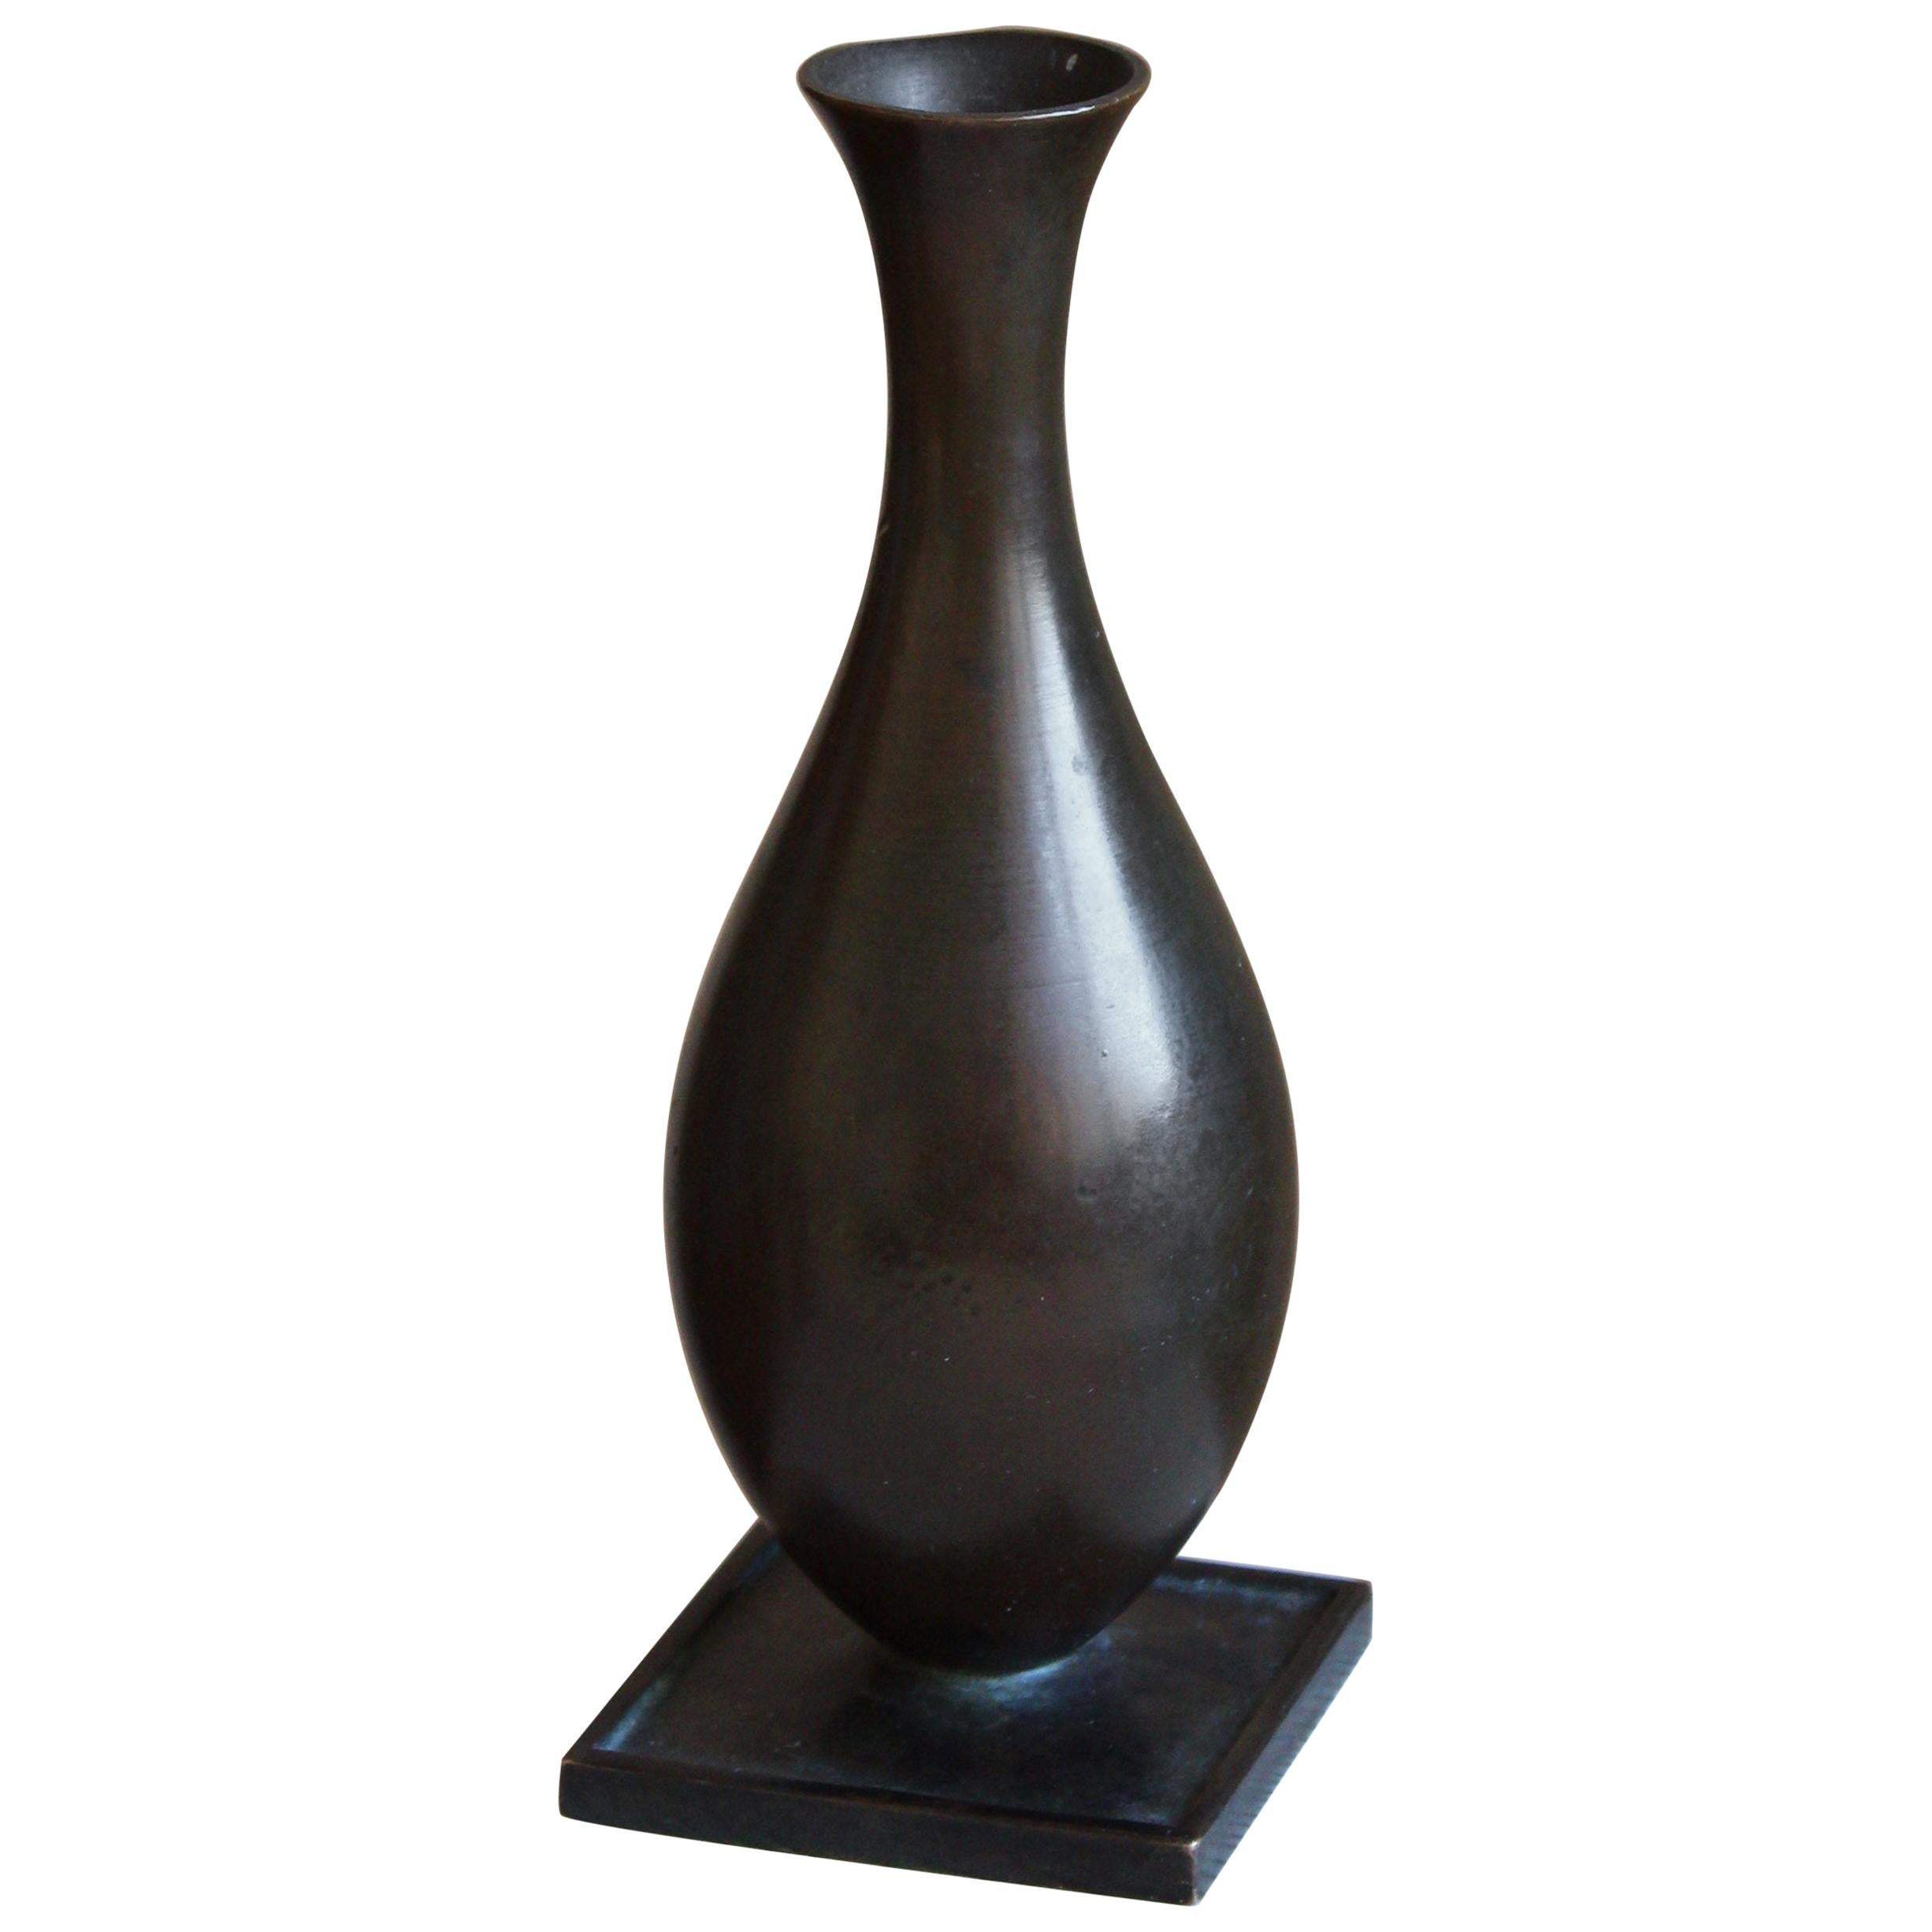 GAB Guldsmedsaktiebolaget, Small Vase or Vessel, Bronze, Sweden, 1930s